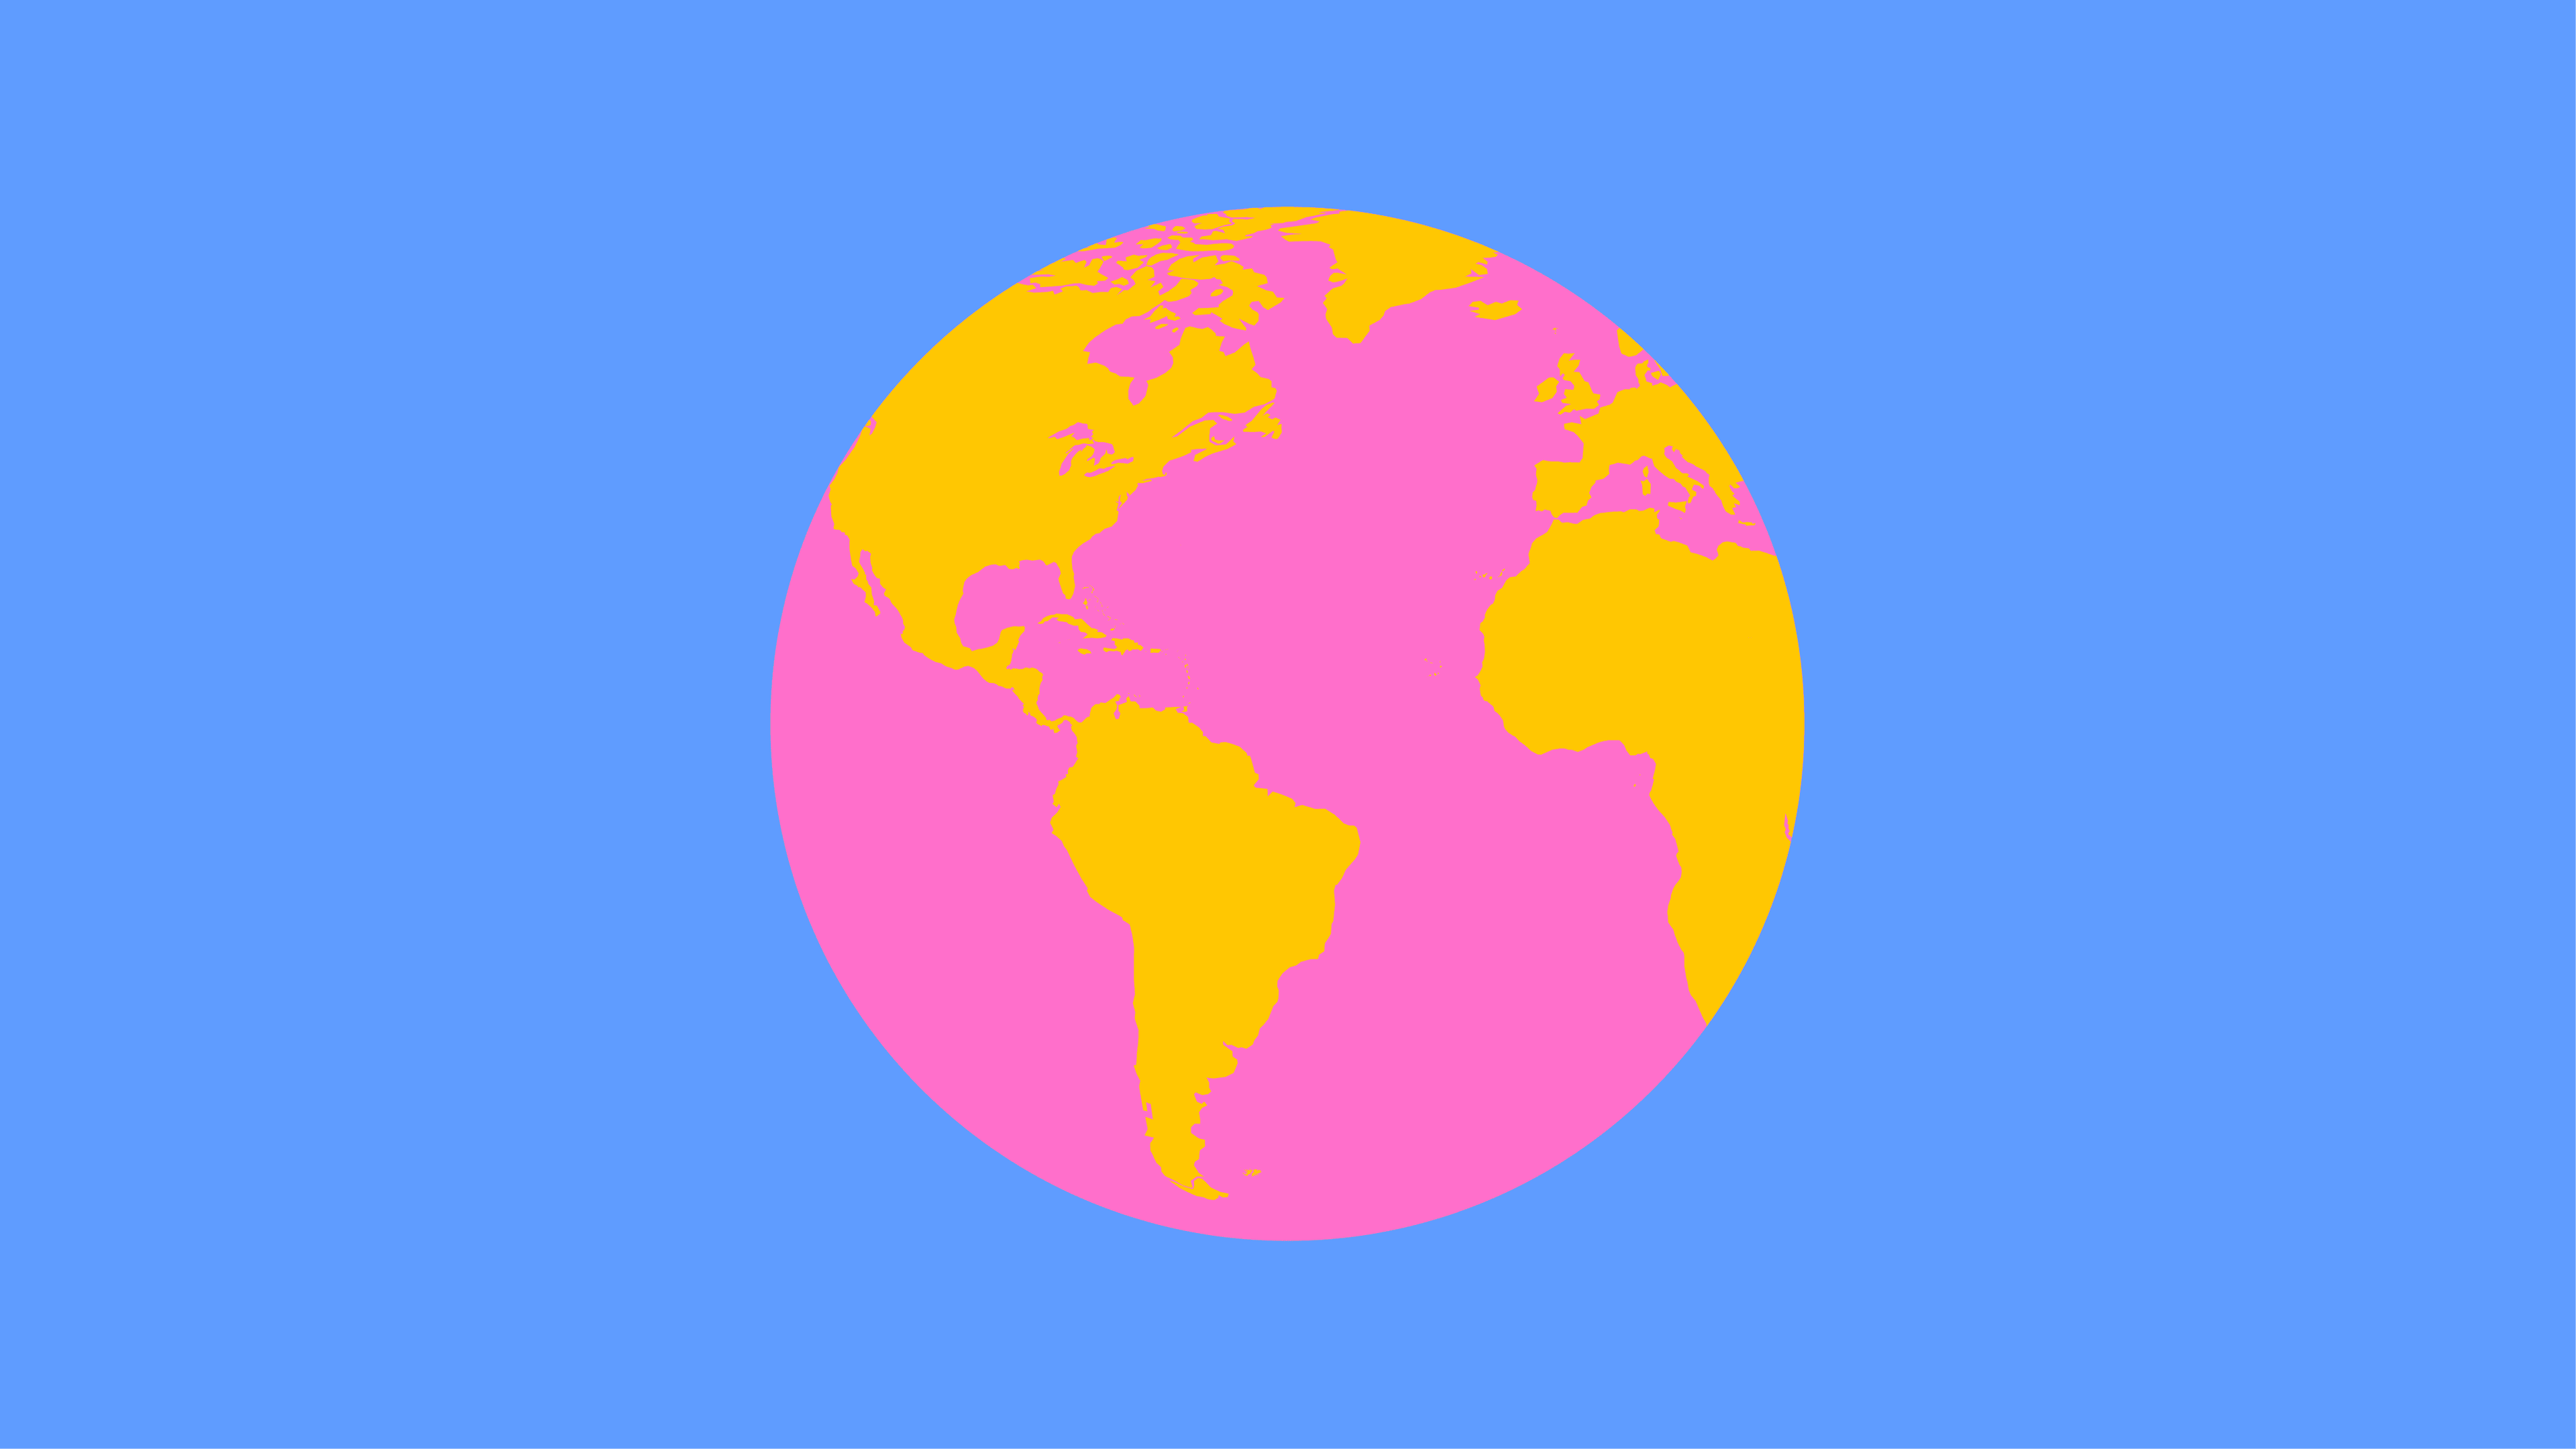 Stylized illustration of a globe